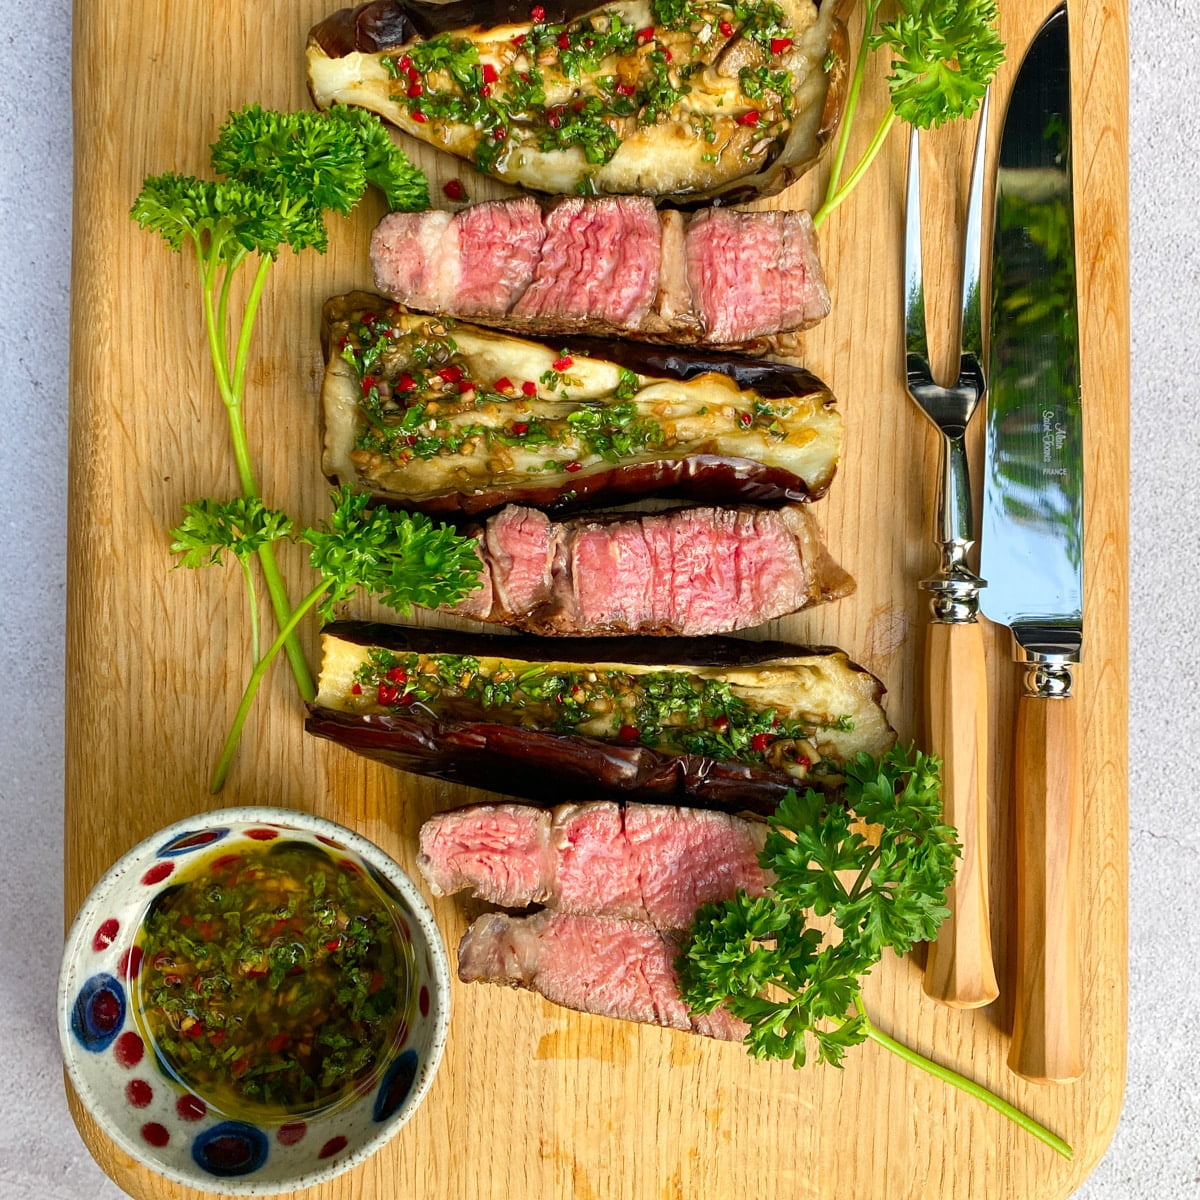 Grilled ribeye steak with chimichurri